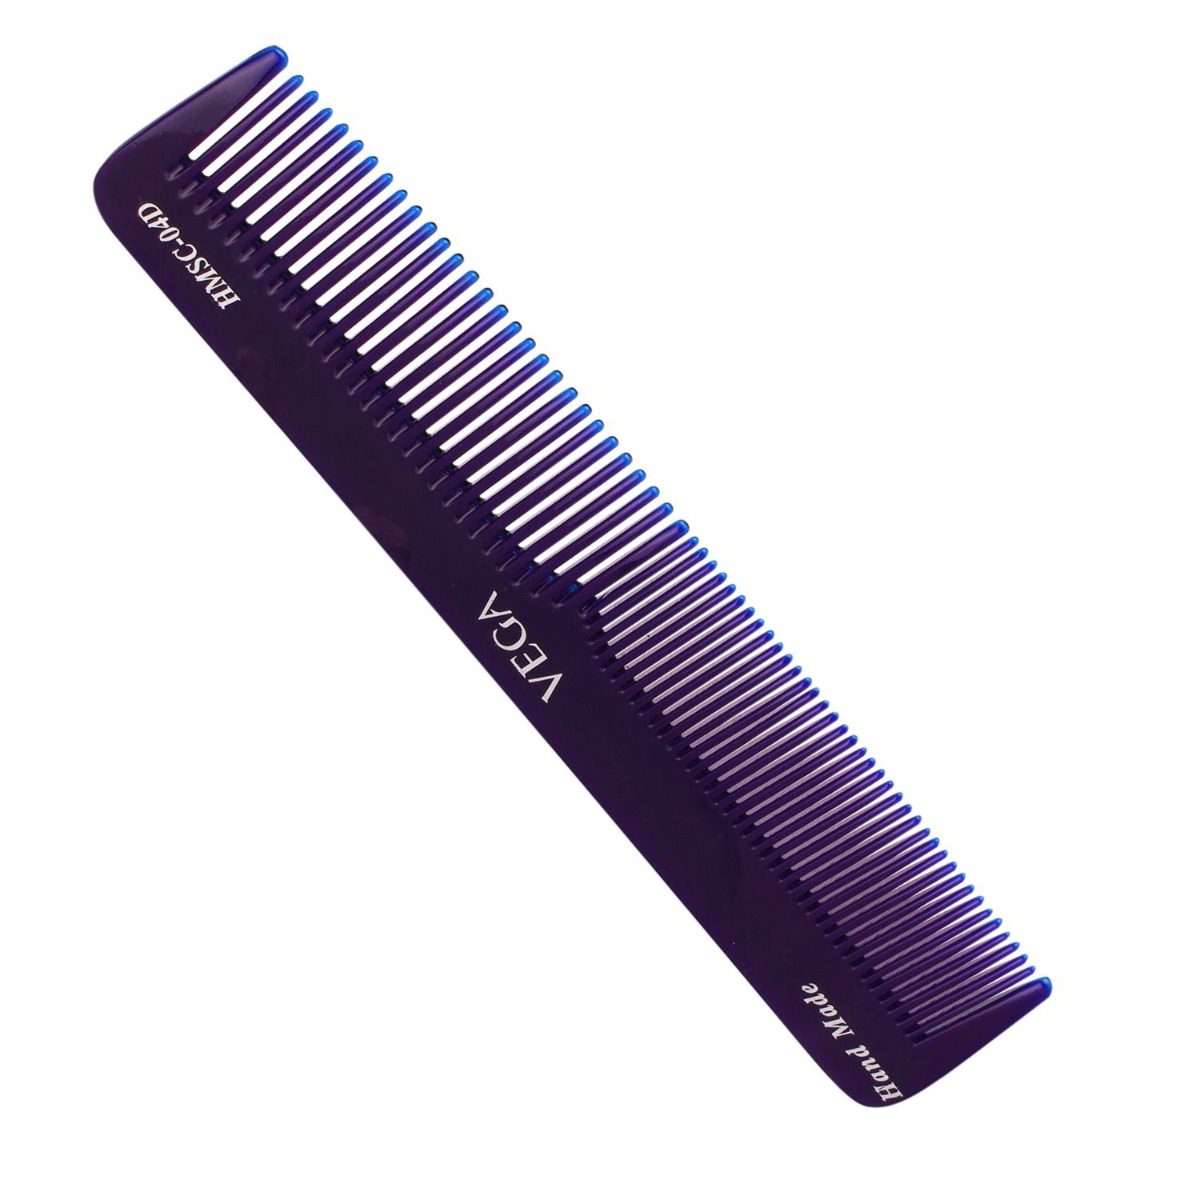 Vega Spectra Dual Color Comb (Graduated Dressing Comb) Hmsc-04d